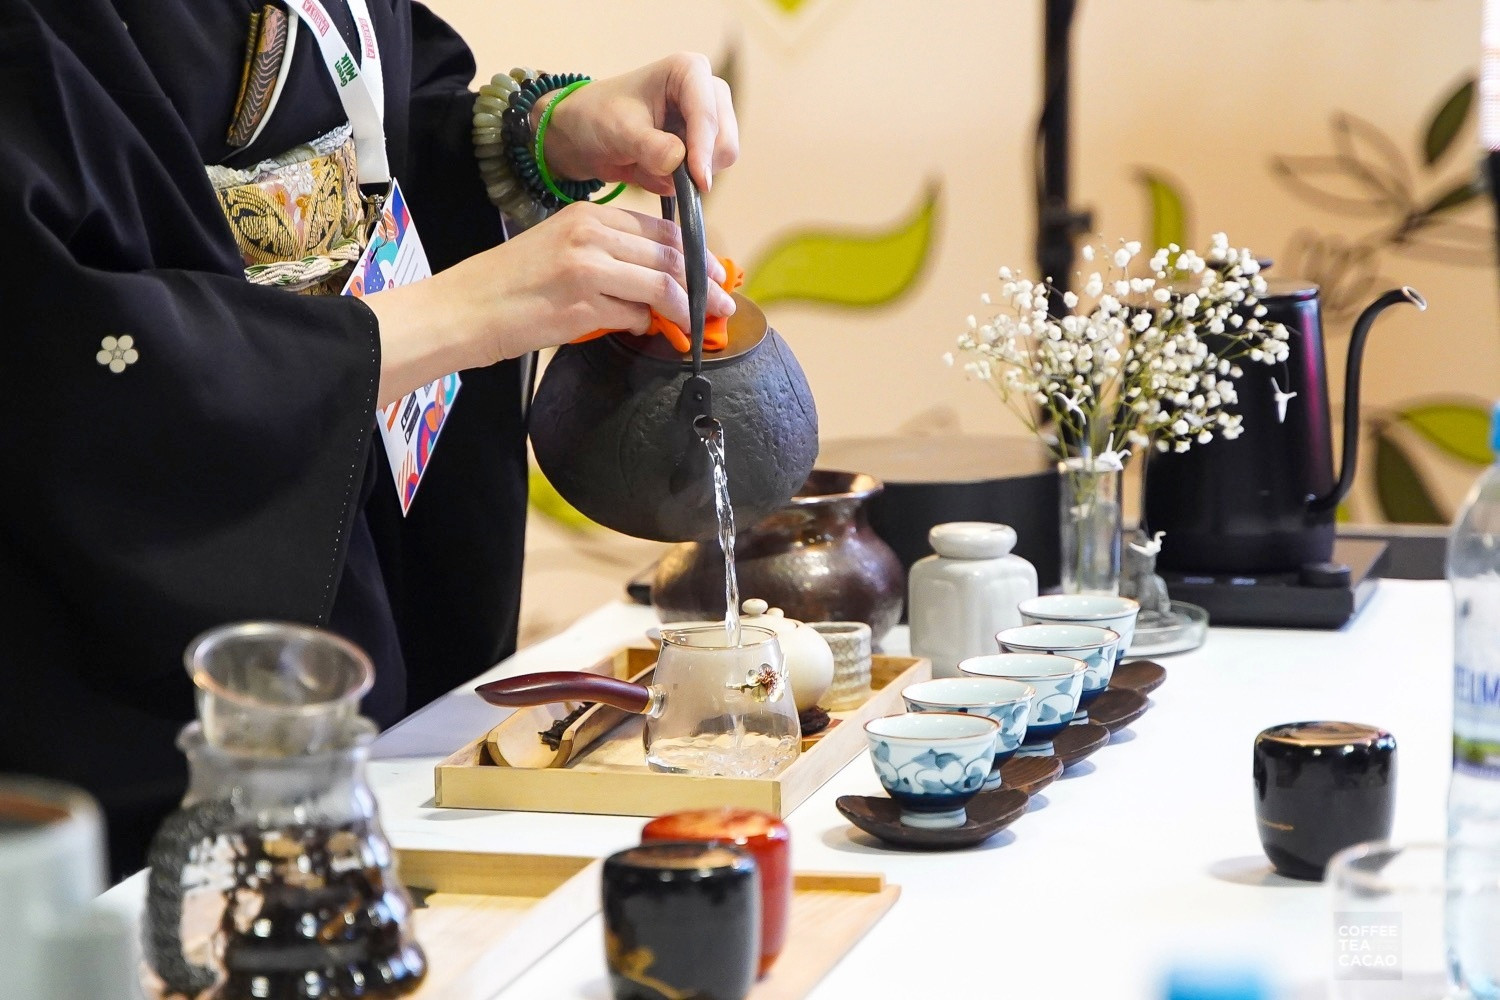 Попробовать редкие чаи, увидеть производства, обменяться опытом: подборка мероприятий чайной индустрии в России и в мире